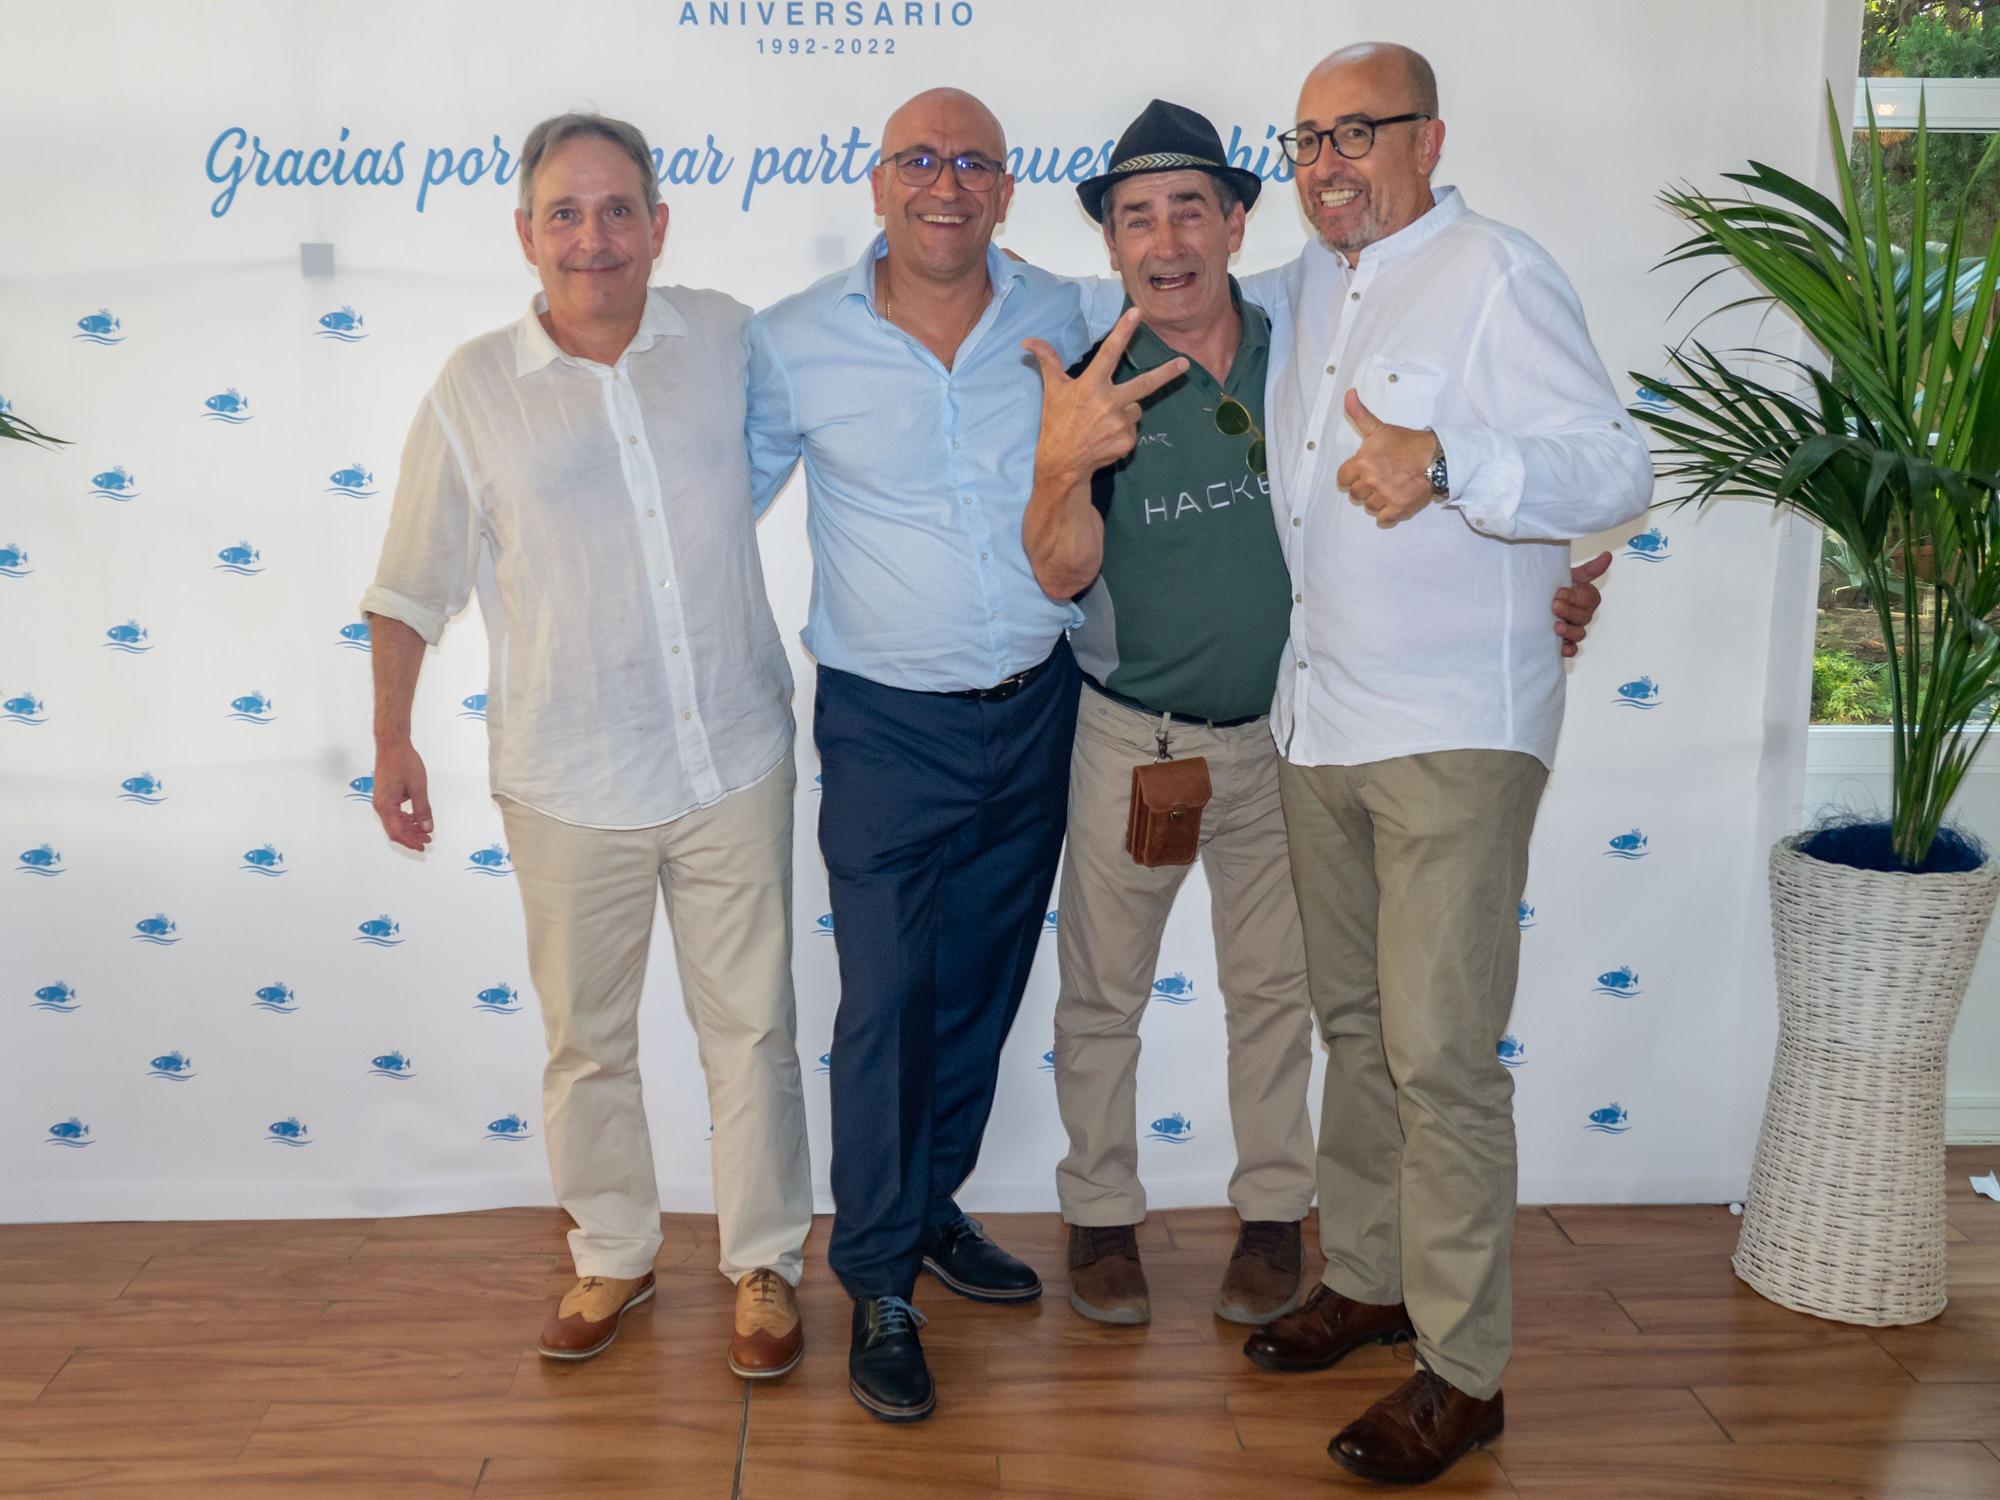 Pescados Castellón celebra su 30º aniversario por todo lo alto